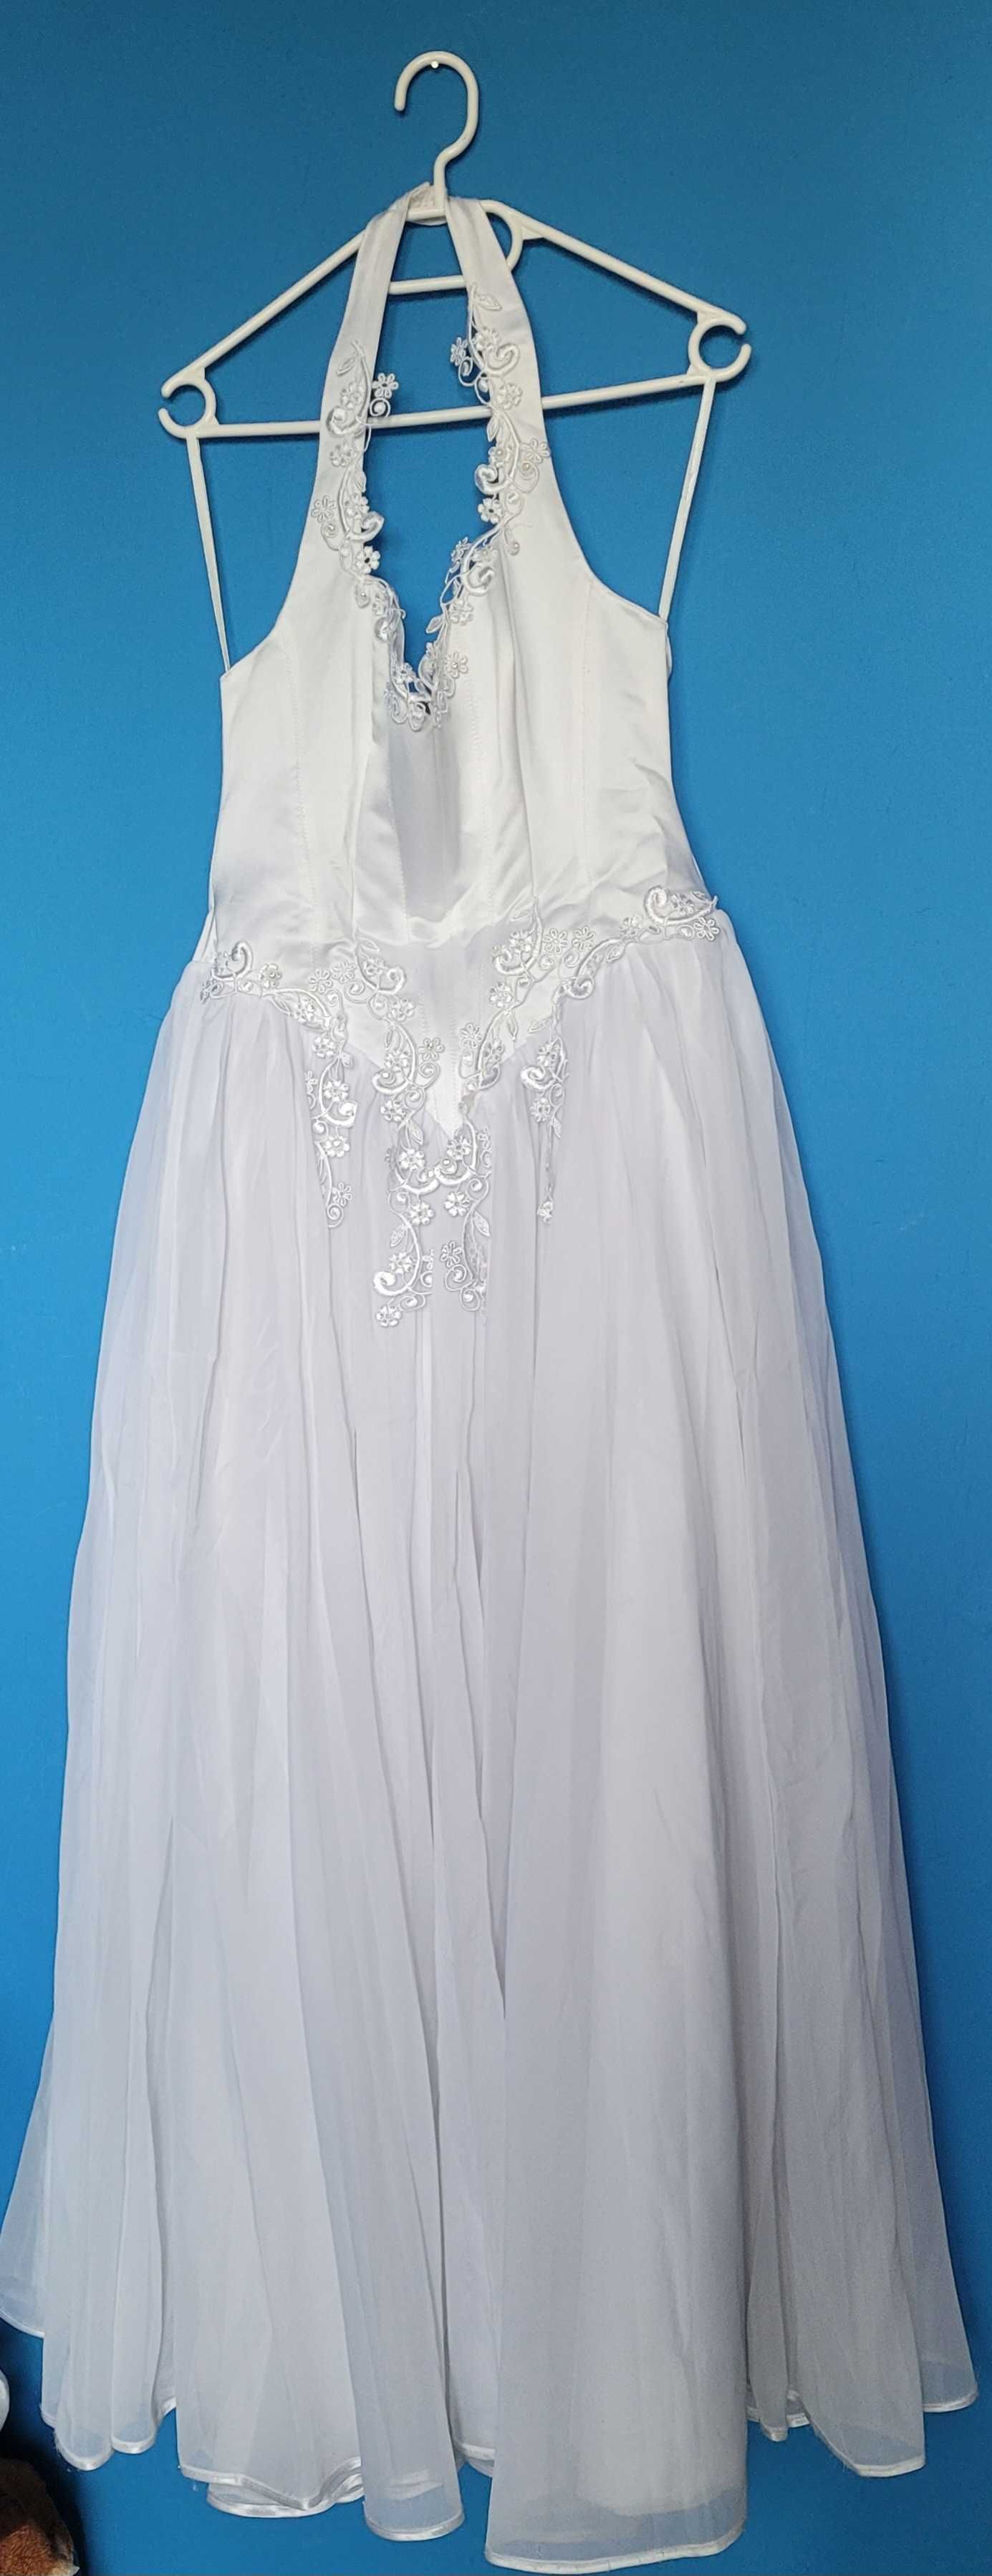 cosplay suknia ślubna suknia okazja tanio przebranie kobieta ślubbiała